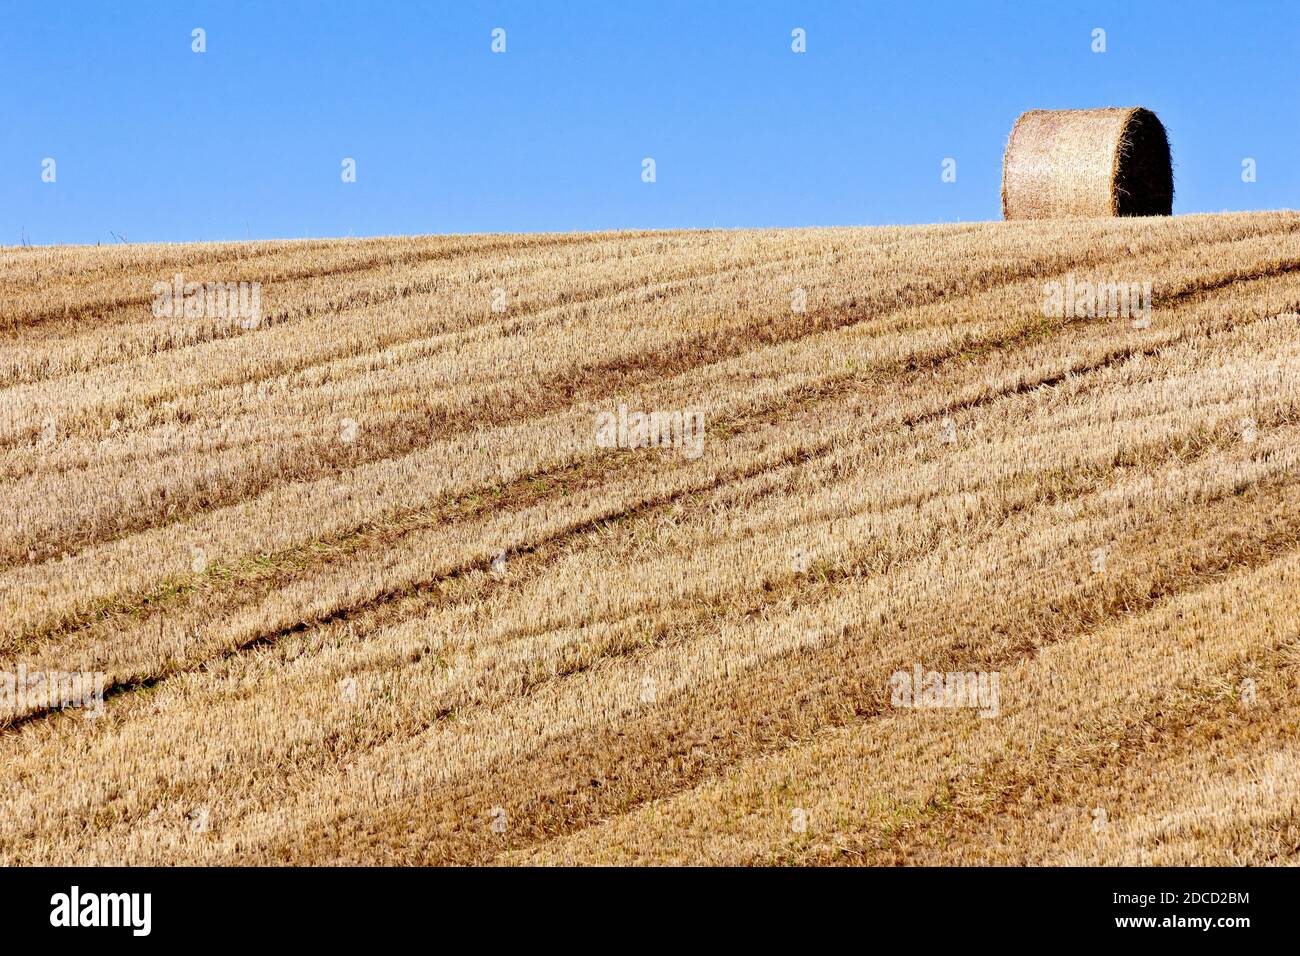 Ein geerntetes Feld, auf dem die Stoppeln und ein einzelner Strohballen auf dem Kamm des Hügels sitzen. Stockfoto